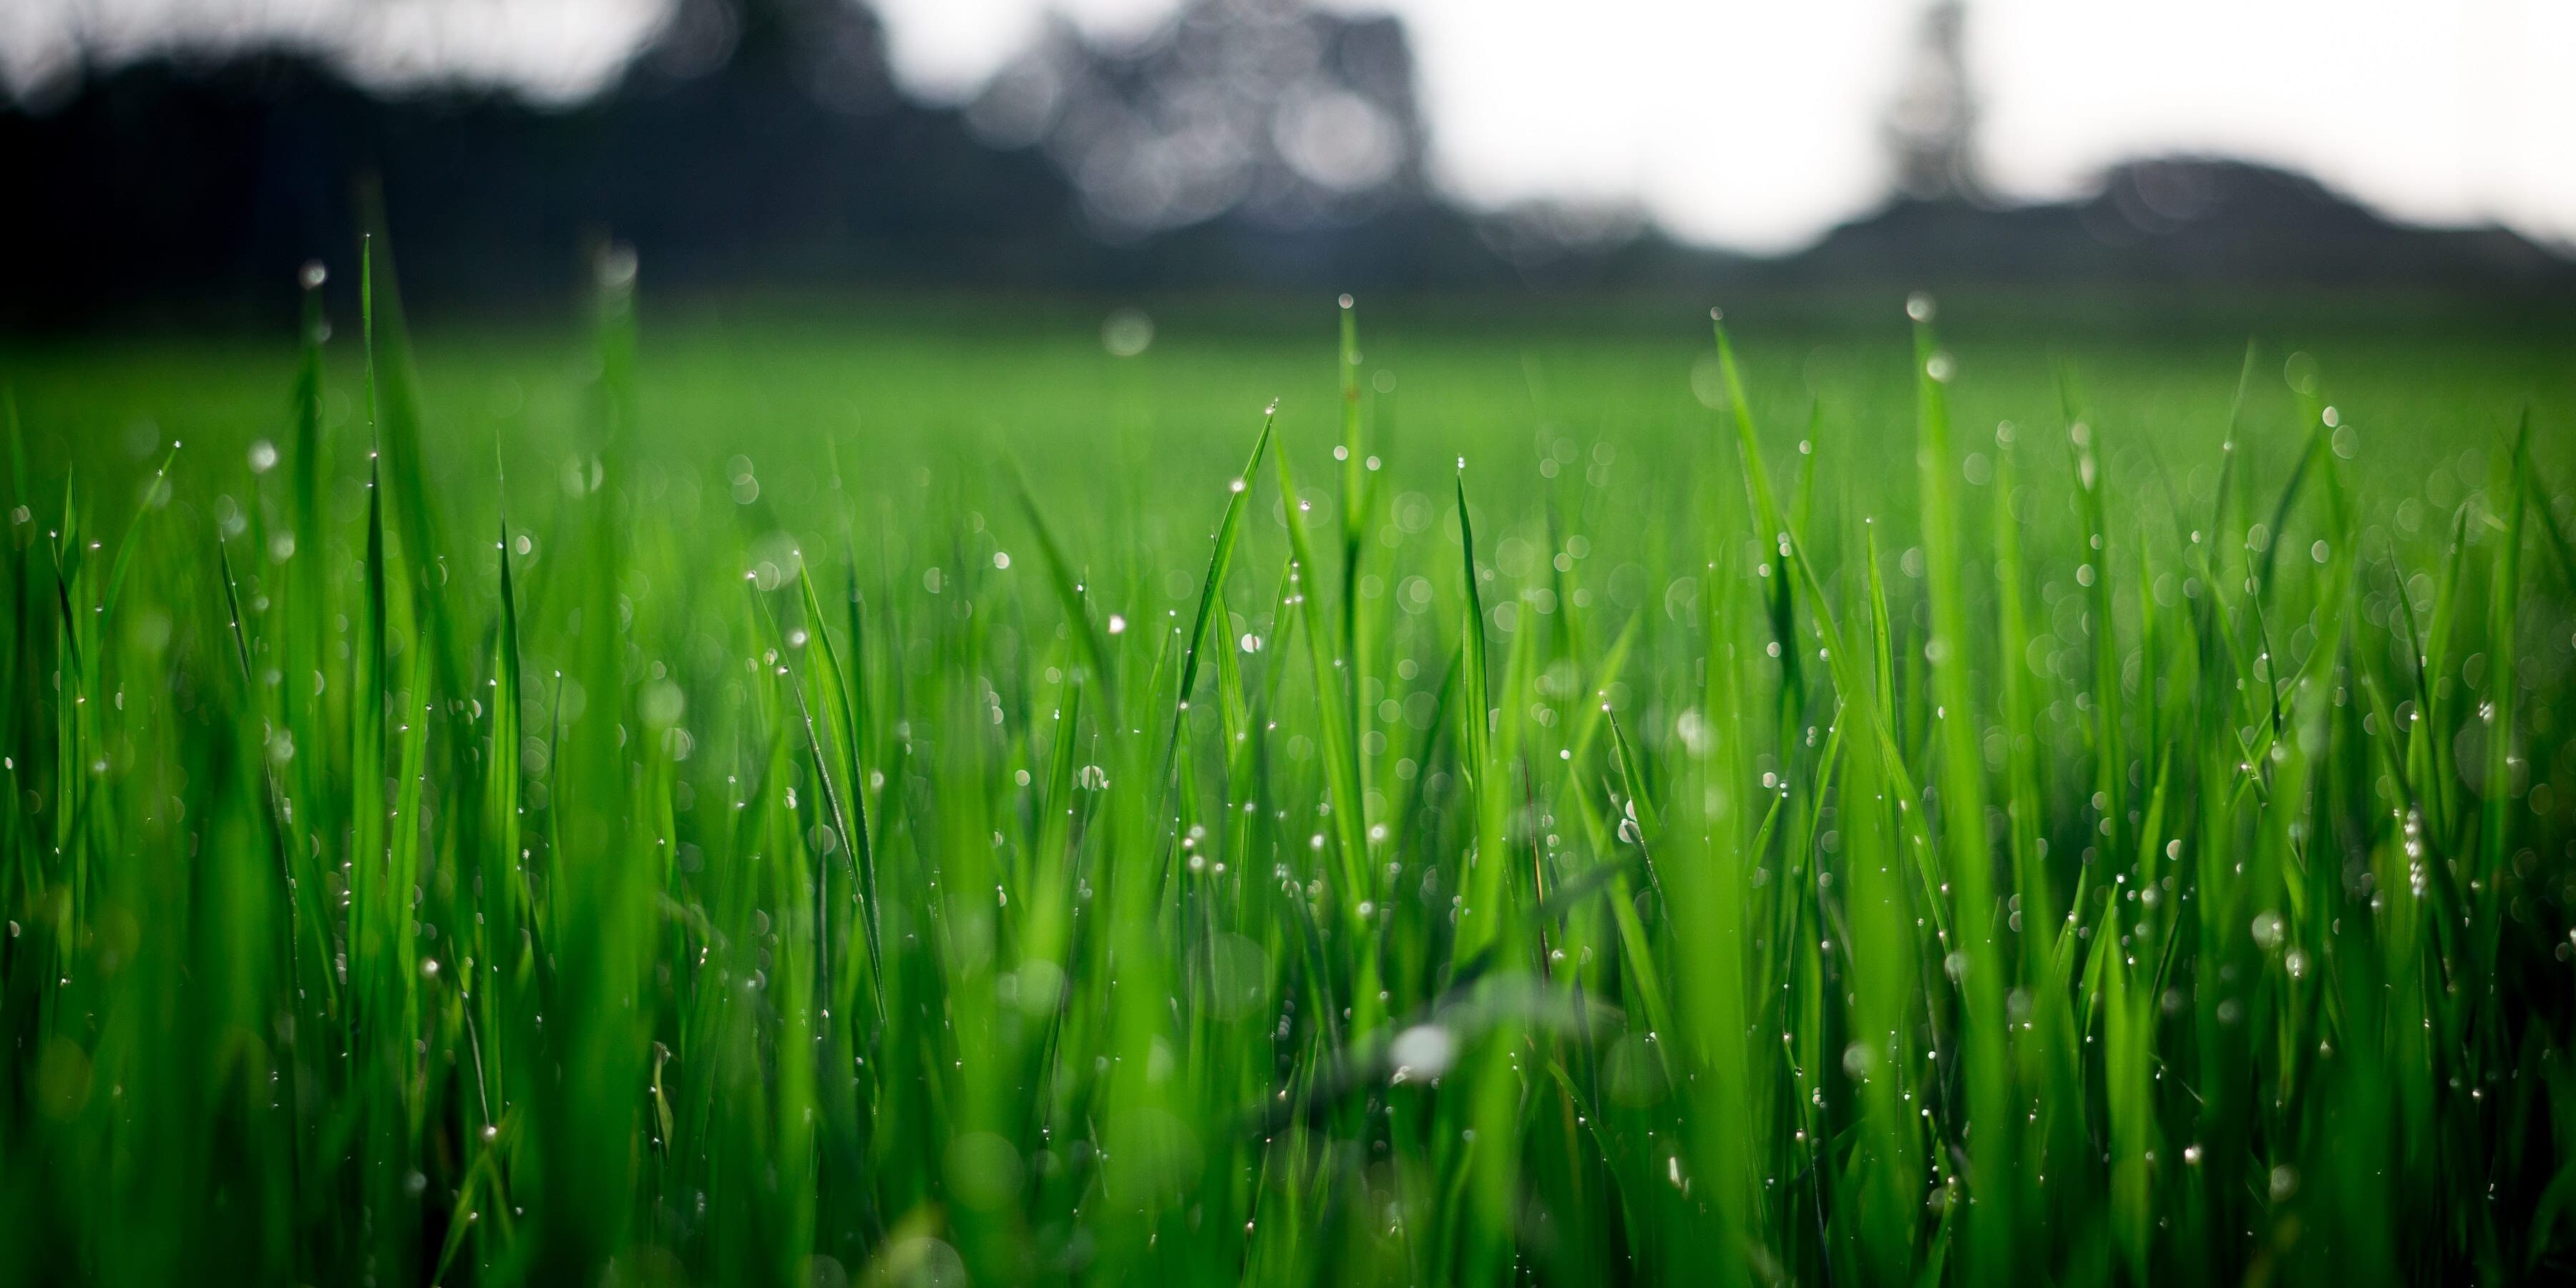 Dew-wet grass